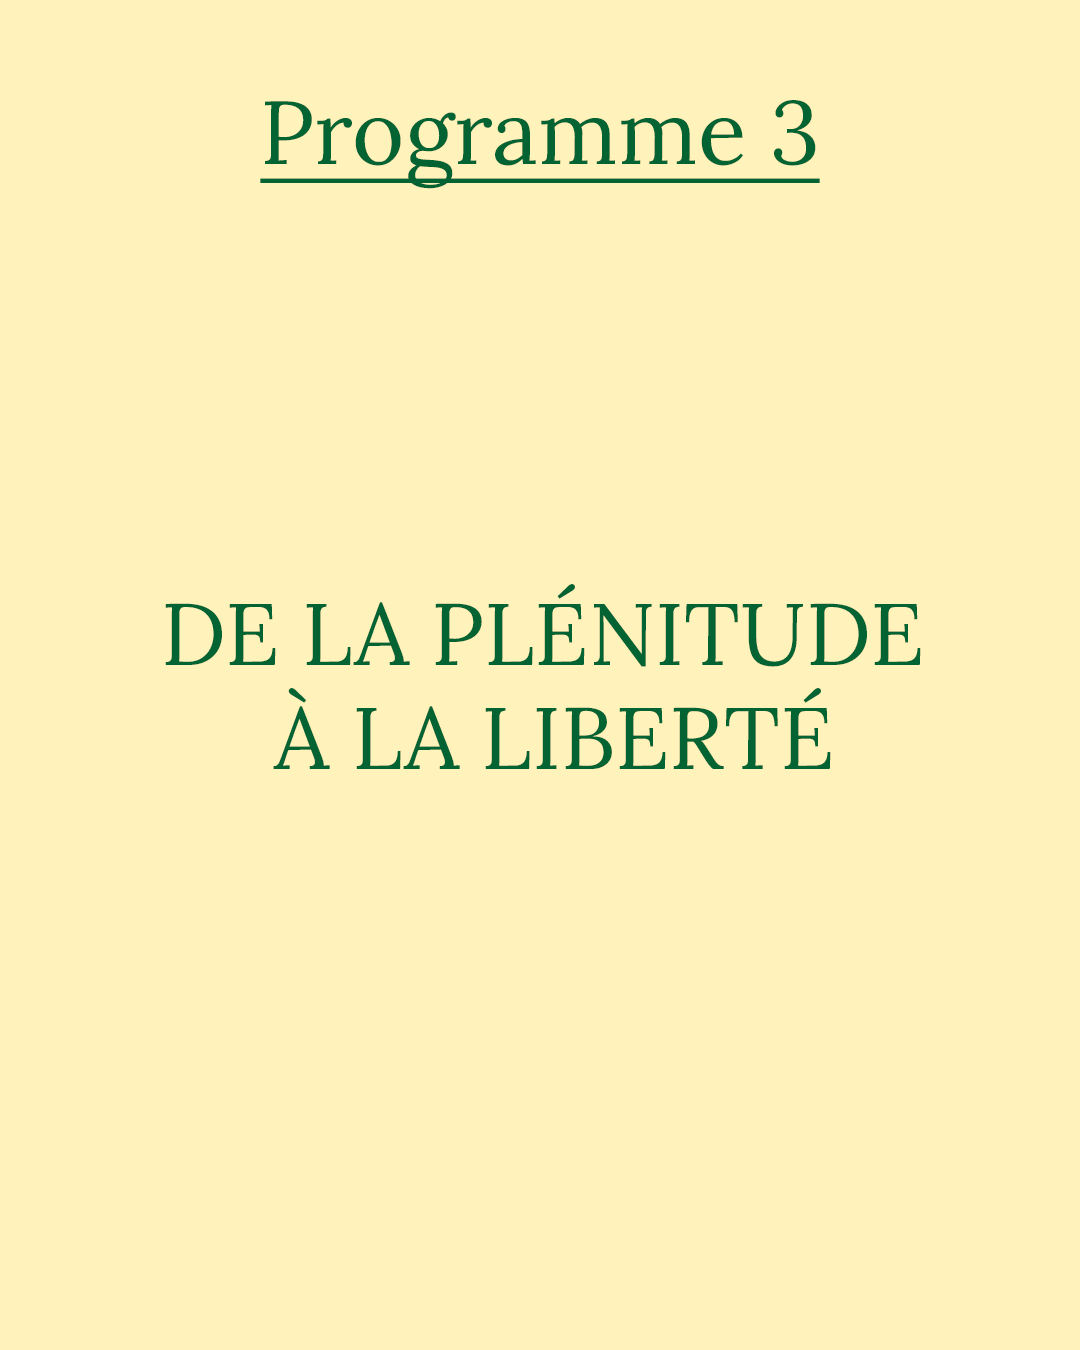 Programme 3 : de la plénitude à la liberte